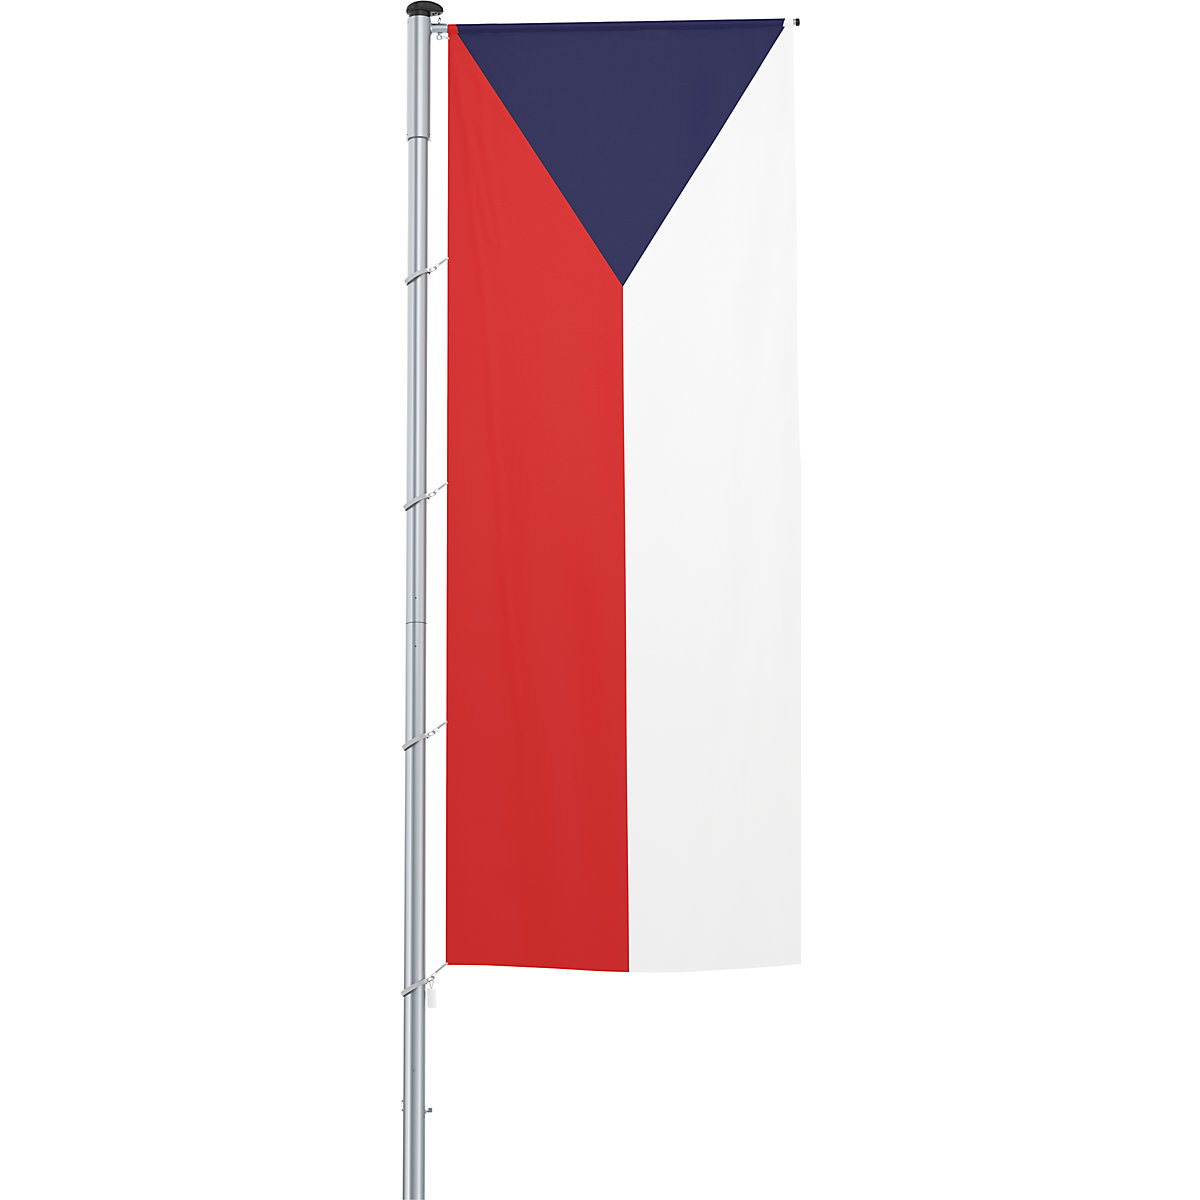 Vlajka na pozdĺžne upevnenie na stožiar/národná vlajka – Mannus, formát 1,2 x 3 m, Česká republika-27